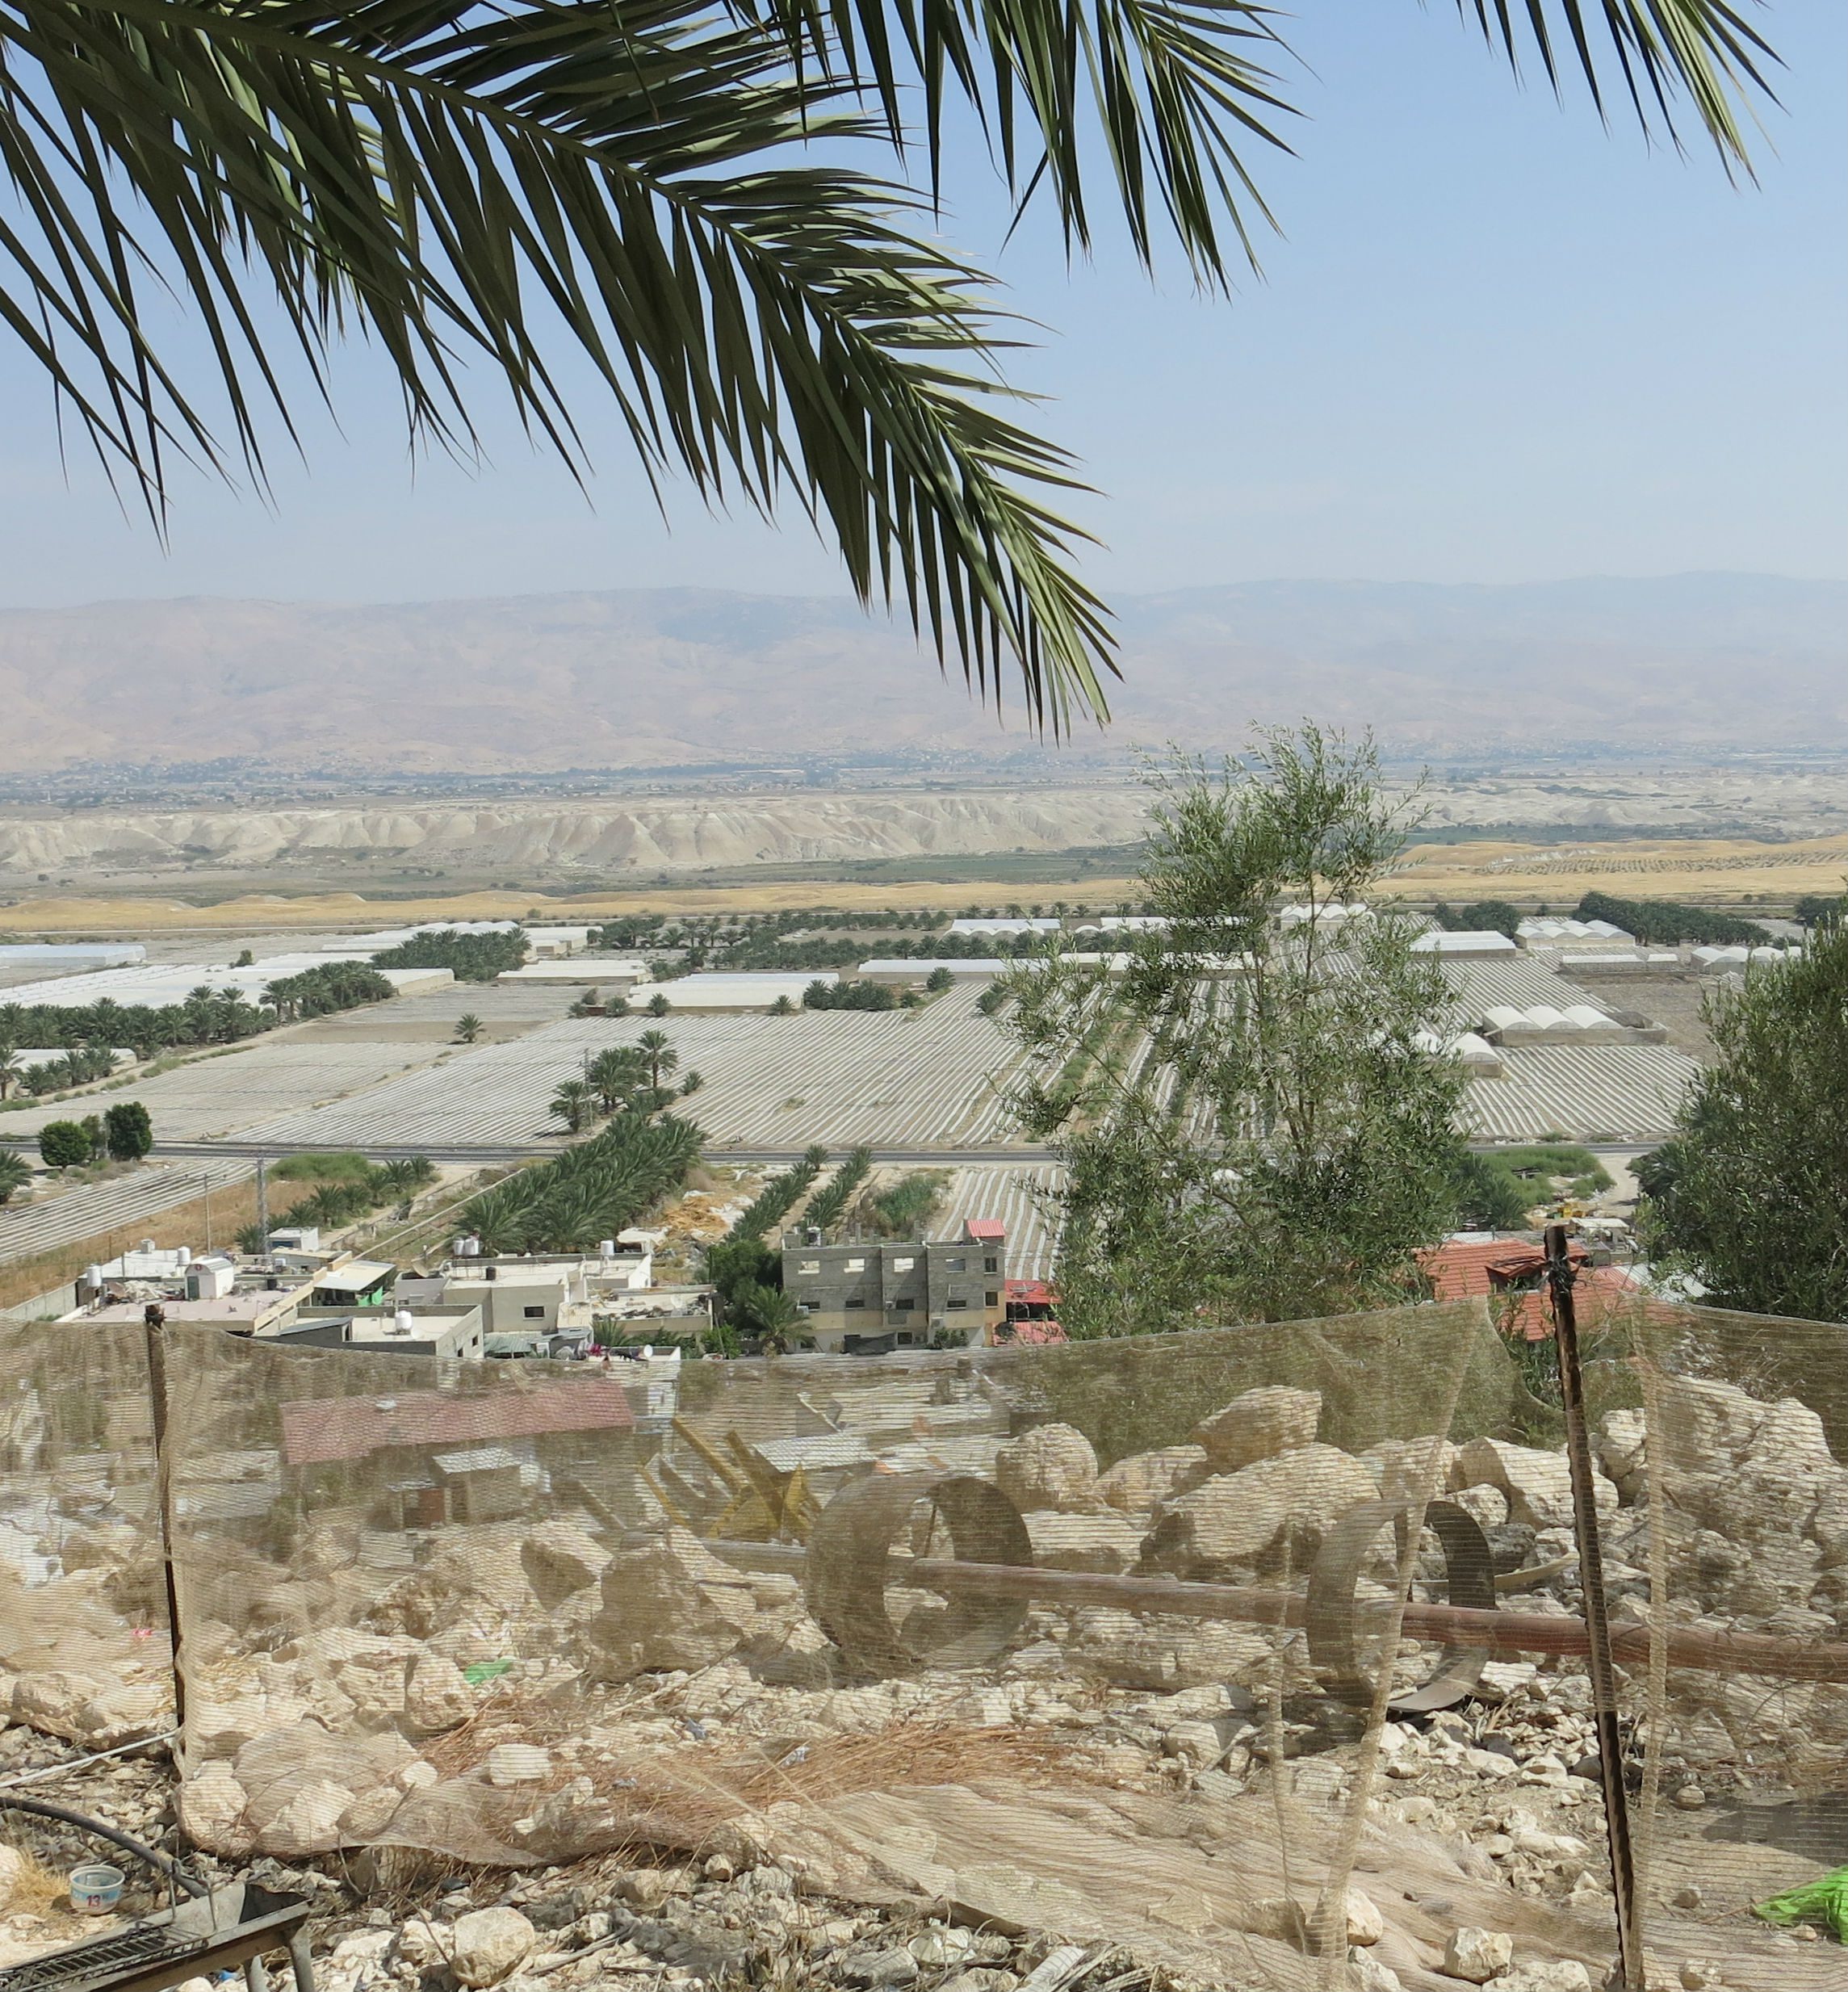 Udsigten fra Ismaels hus på skråningen. I baggrunden ses Jordan og i området i mellem ses de israelsk dyrkede marker. (Foto: Emilie Halberg)